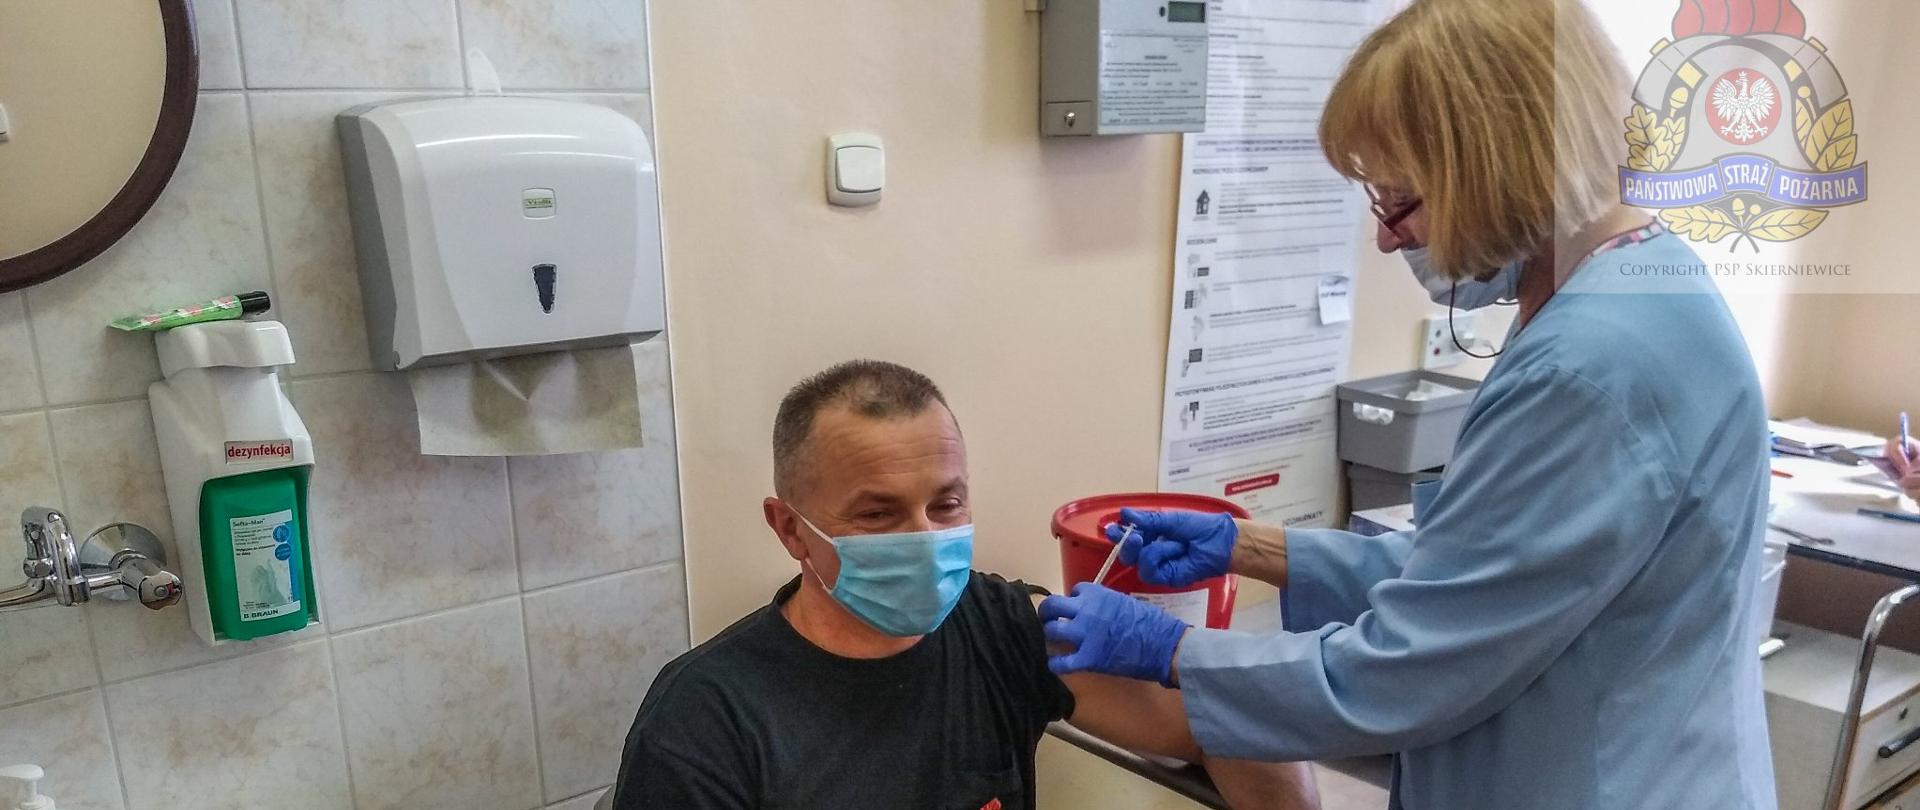 Szczepienie funkcjonariusza PSP w szpitalu w Skierniewicach